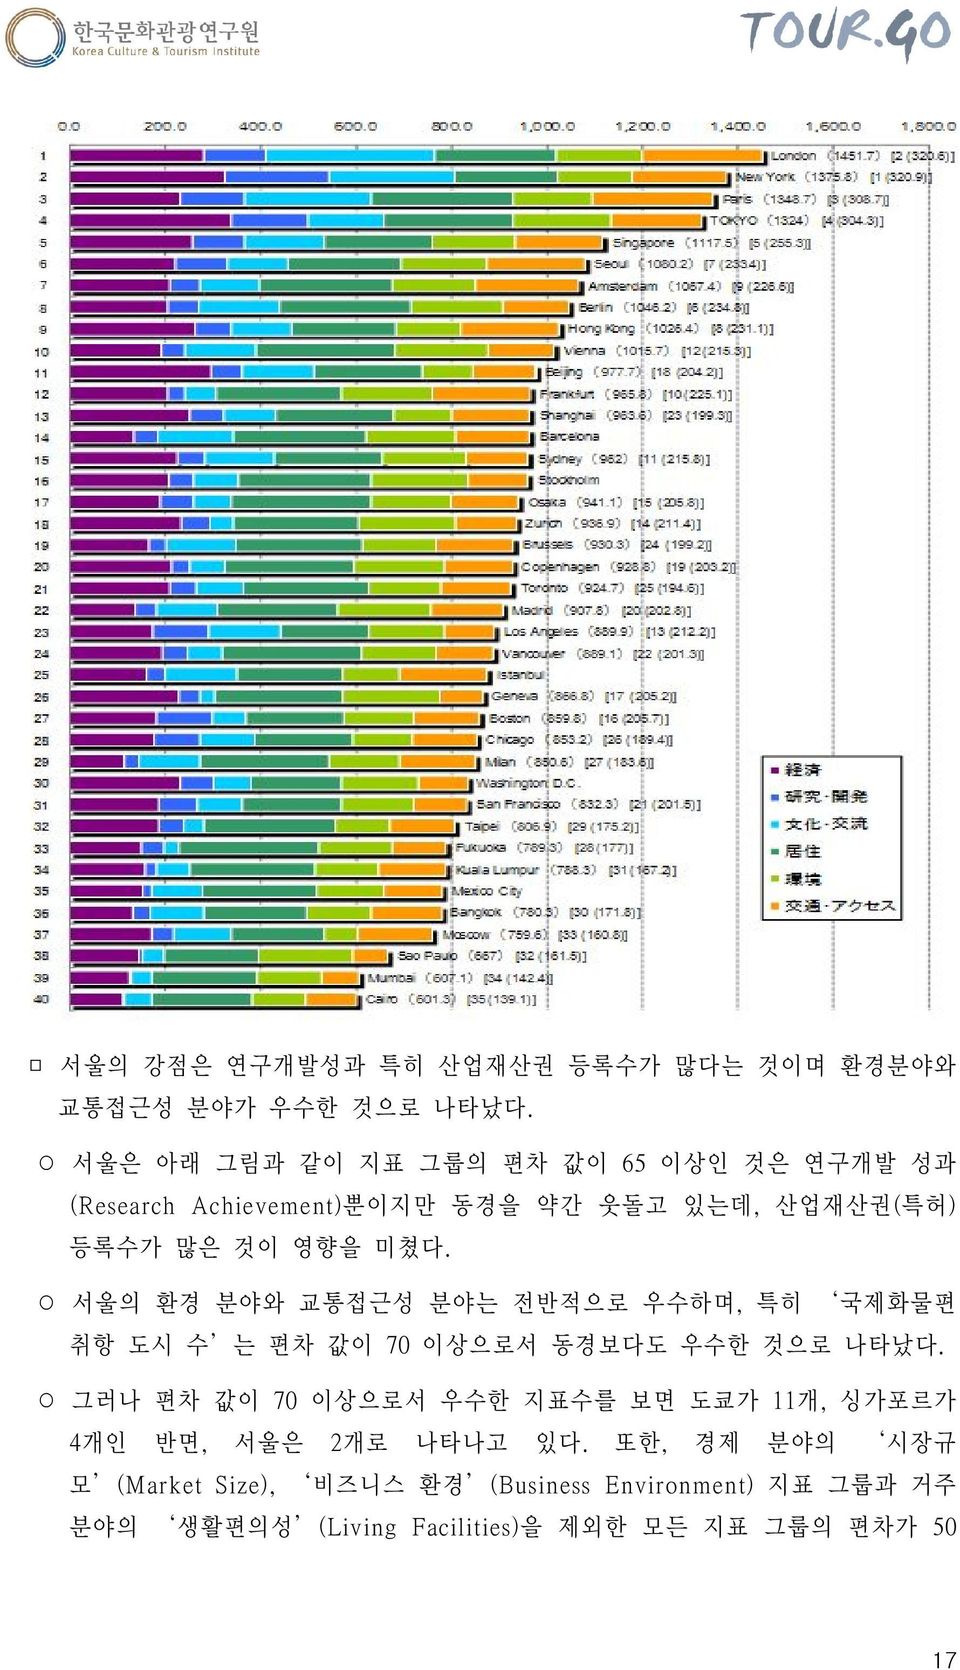 서울의 환경 분야와 교통접근성 분야는 전반적으로 우수하며, 특히 국제화물편 취항 도시 수 는 편차 값이 70 이상으로서 동경보다도 우수한 것으로 나타났다.